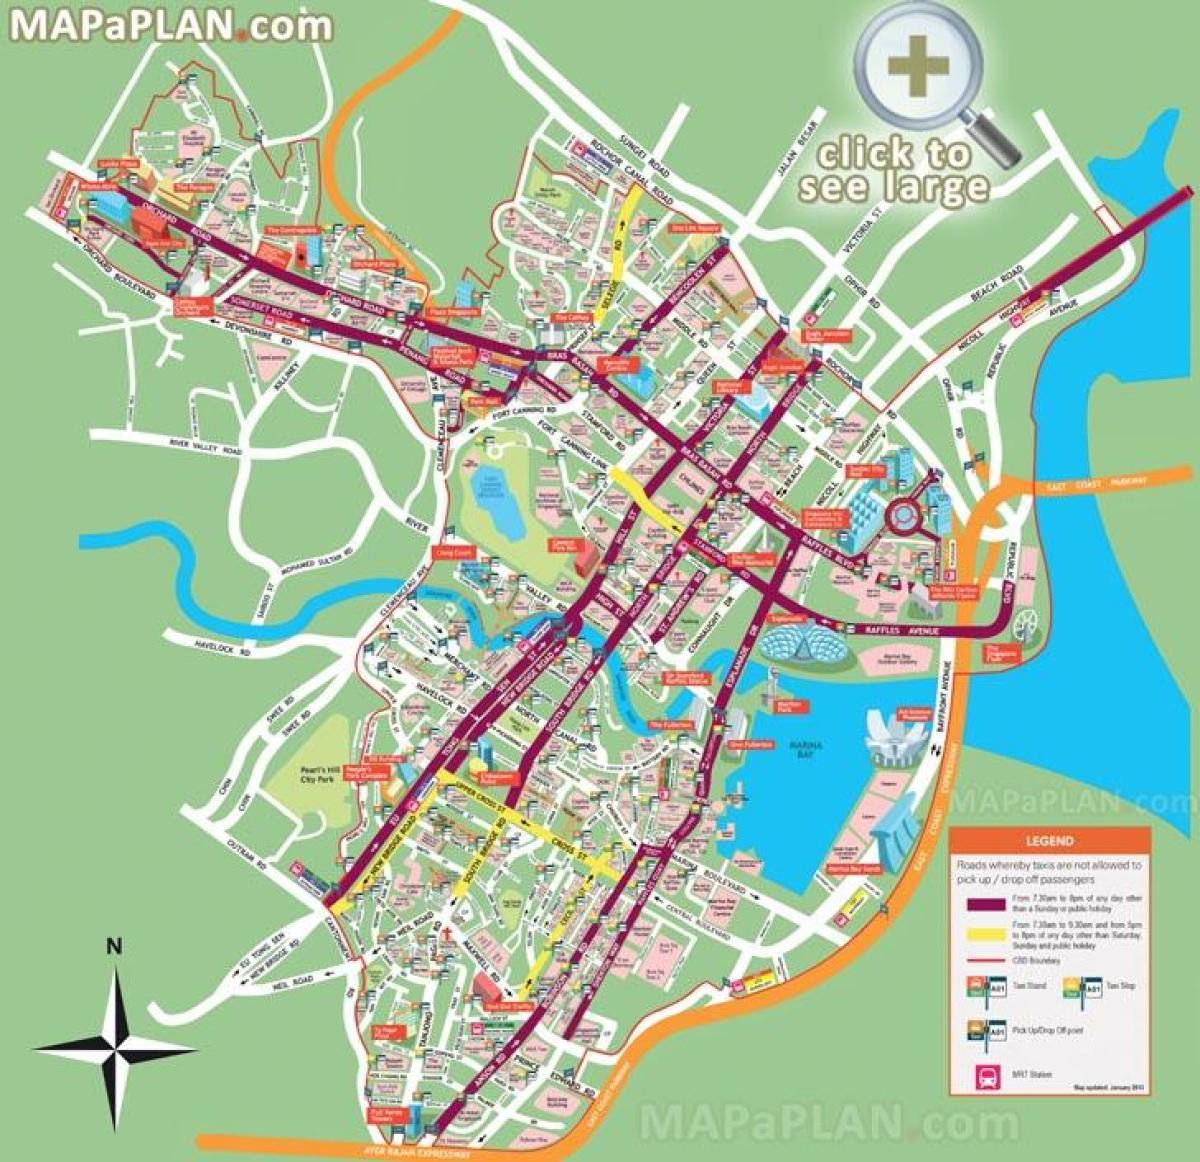 Singapur turistických míst mapě